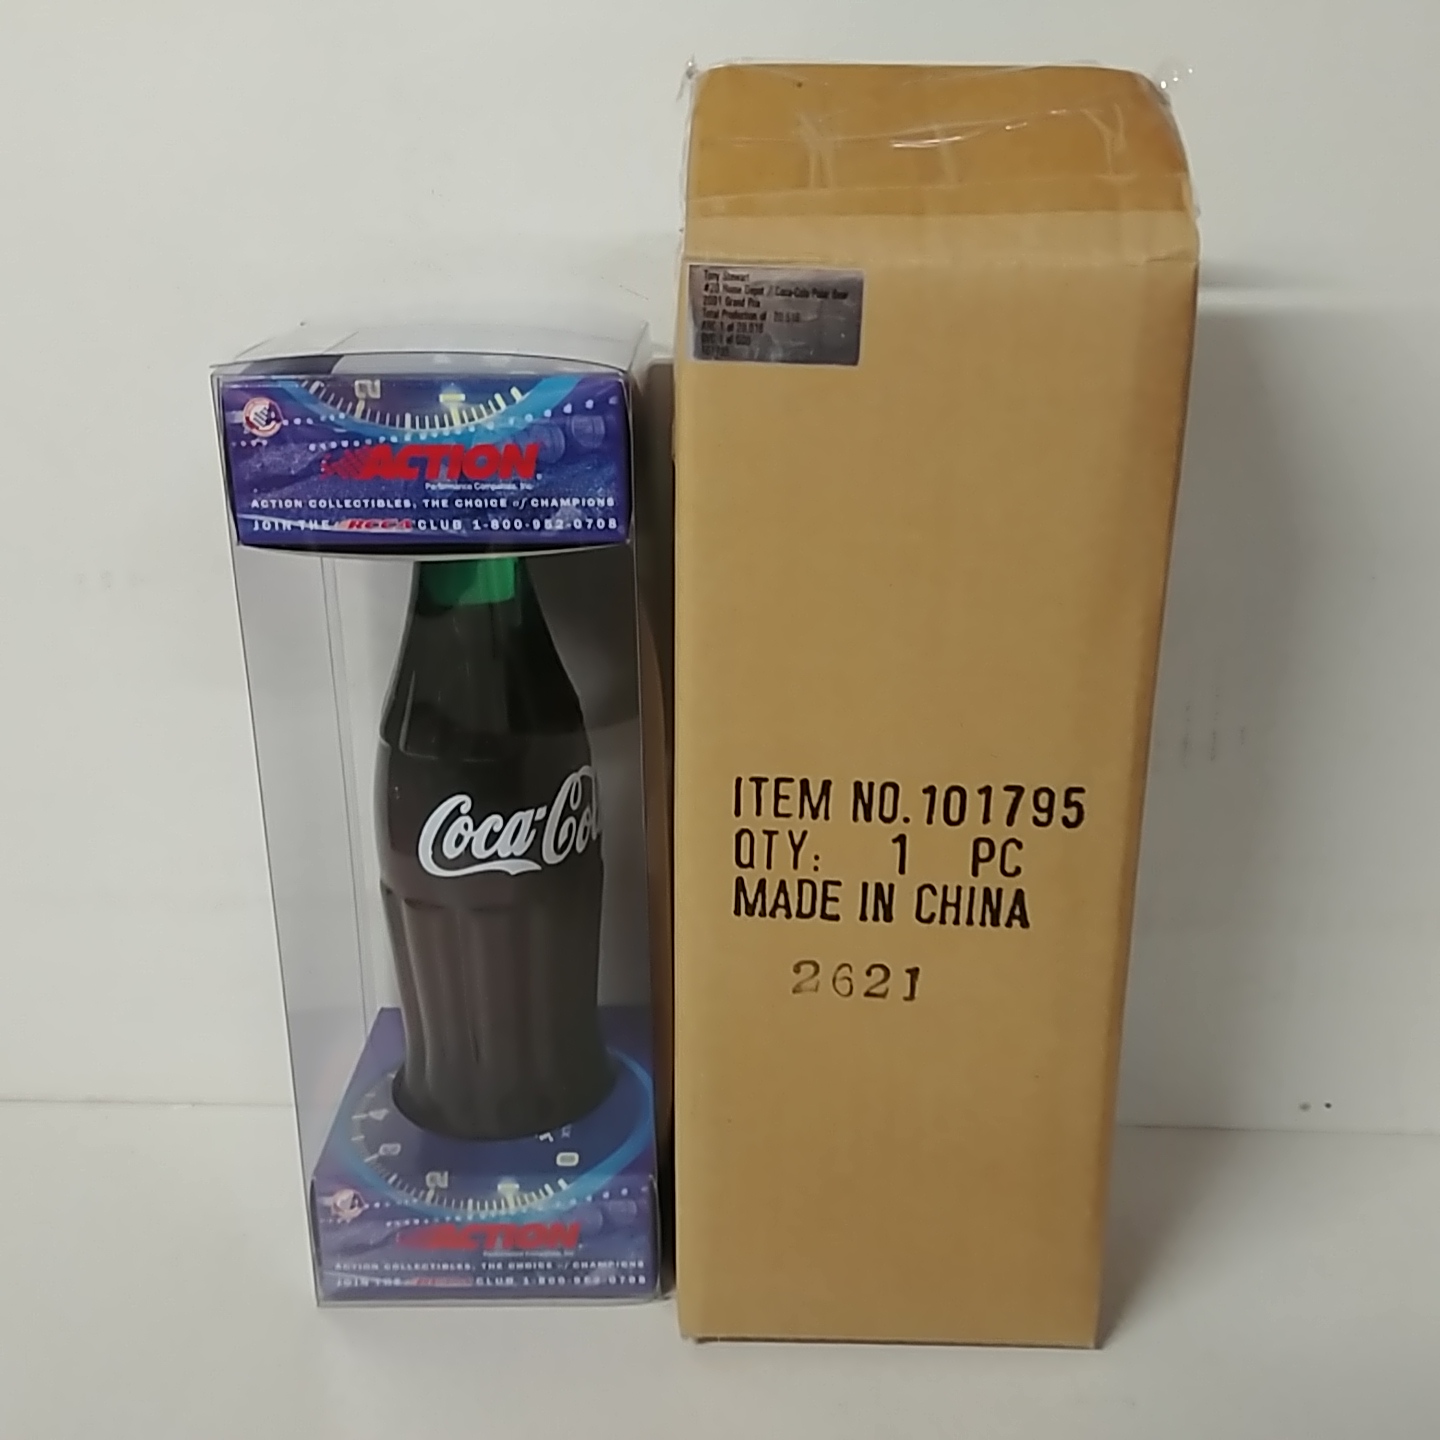 2001 Tony Stewart 1/64th Home Depot "Coke" car in bottle